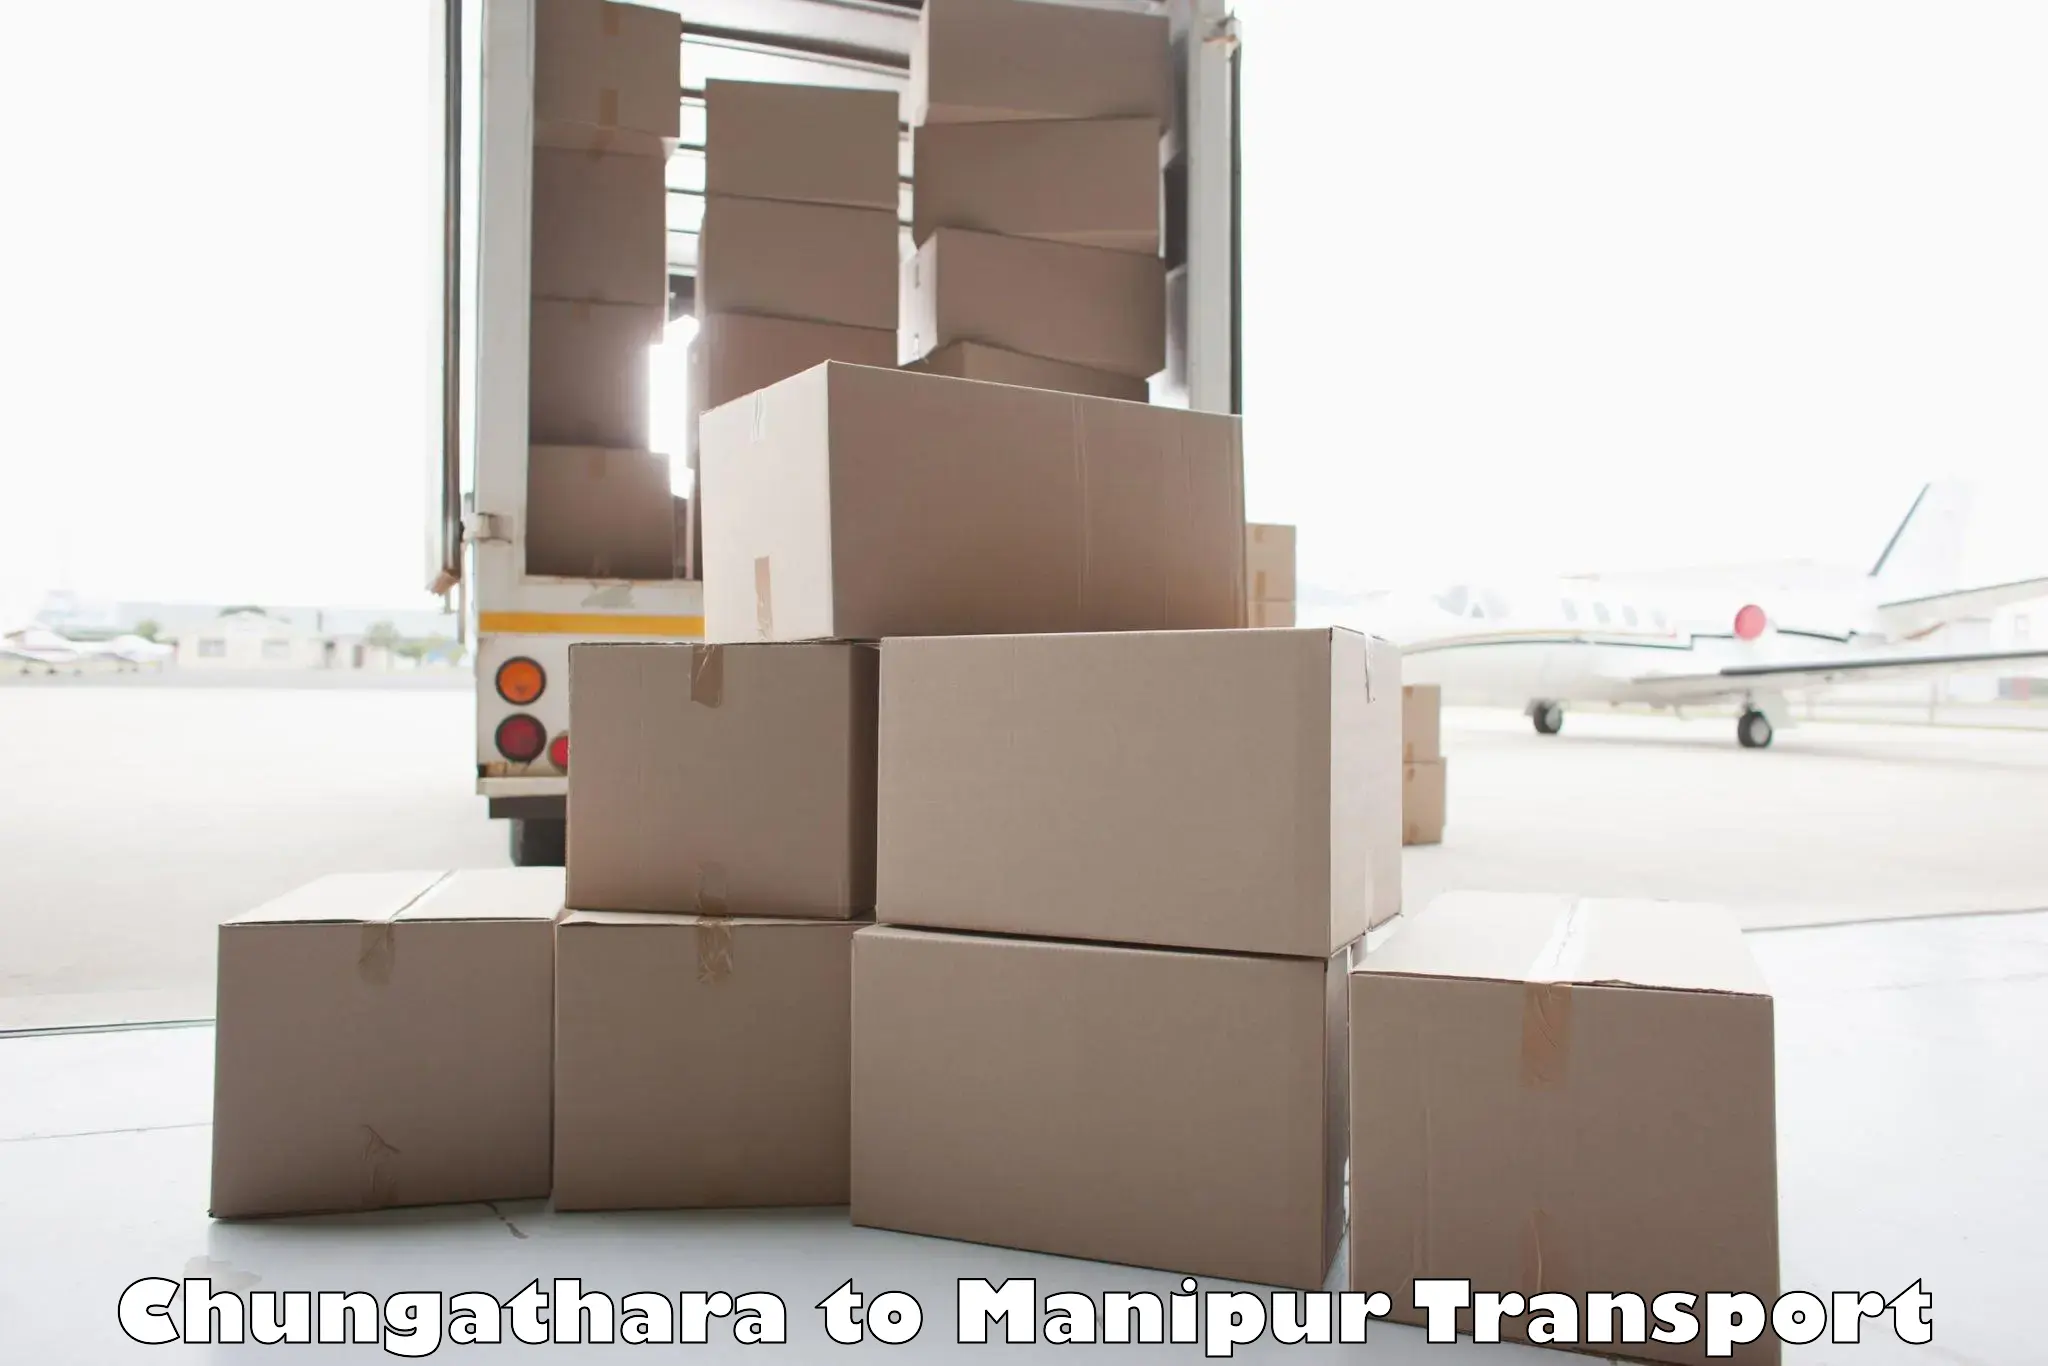 Shipping partner Chungathara to Chandel